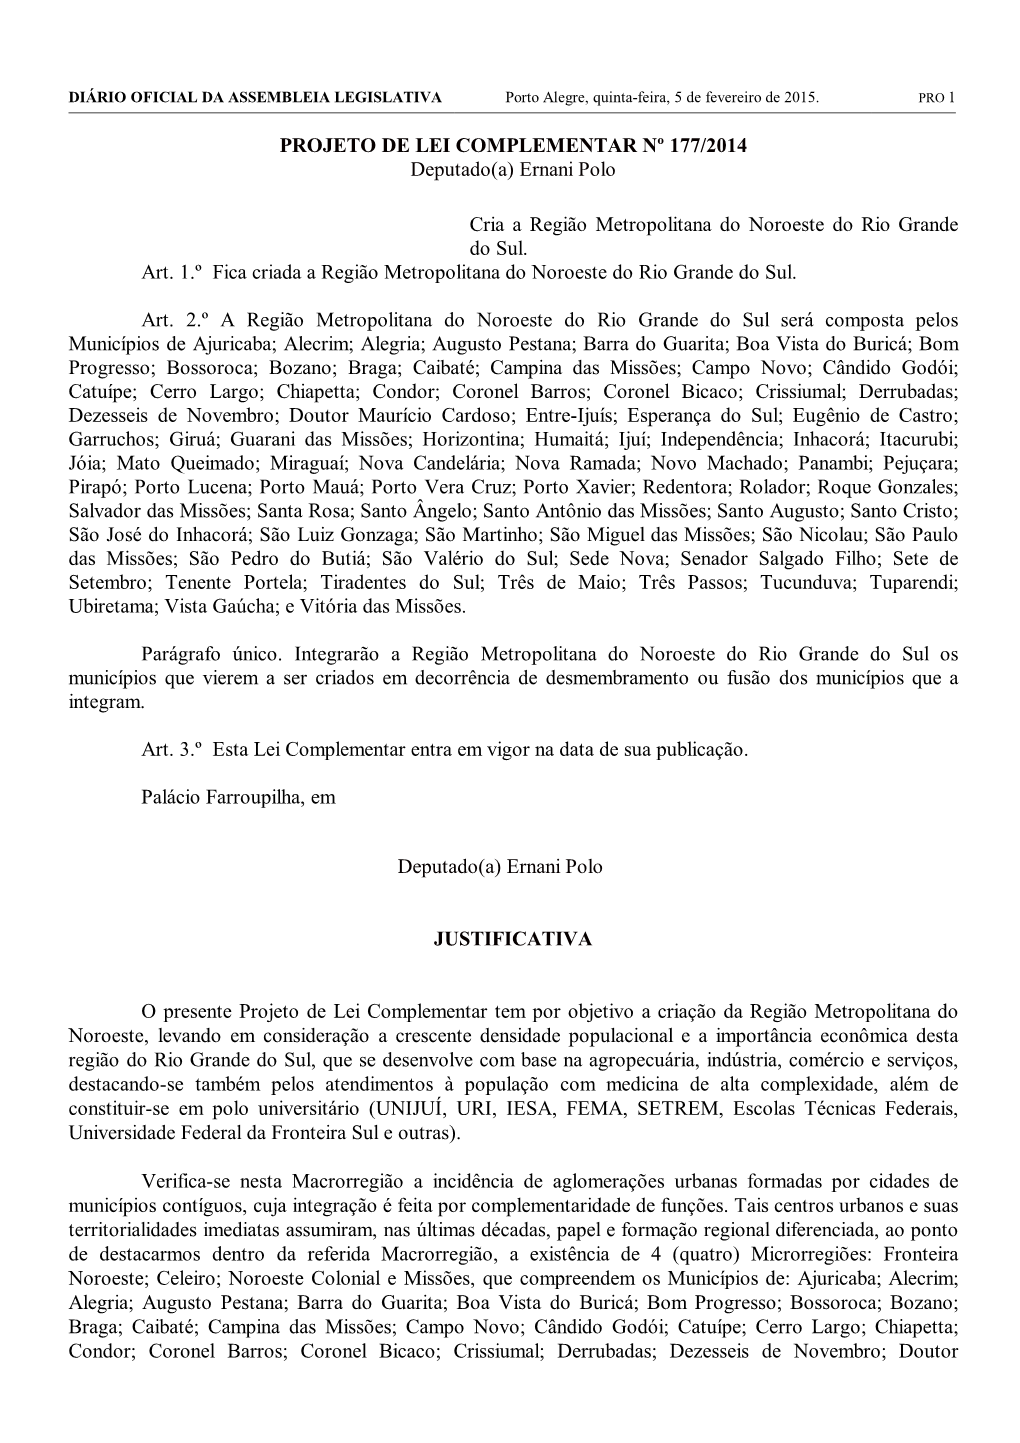 PROJETO DE LEI COMPLEMENTAR Nº 177/2014 Deputado(A) Ernani Polo